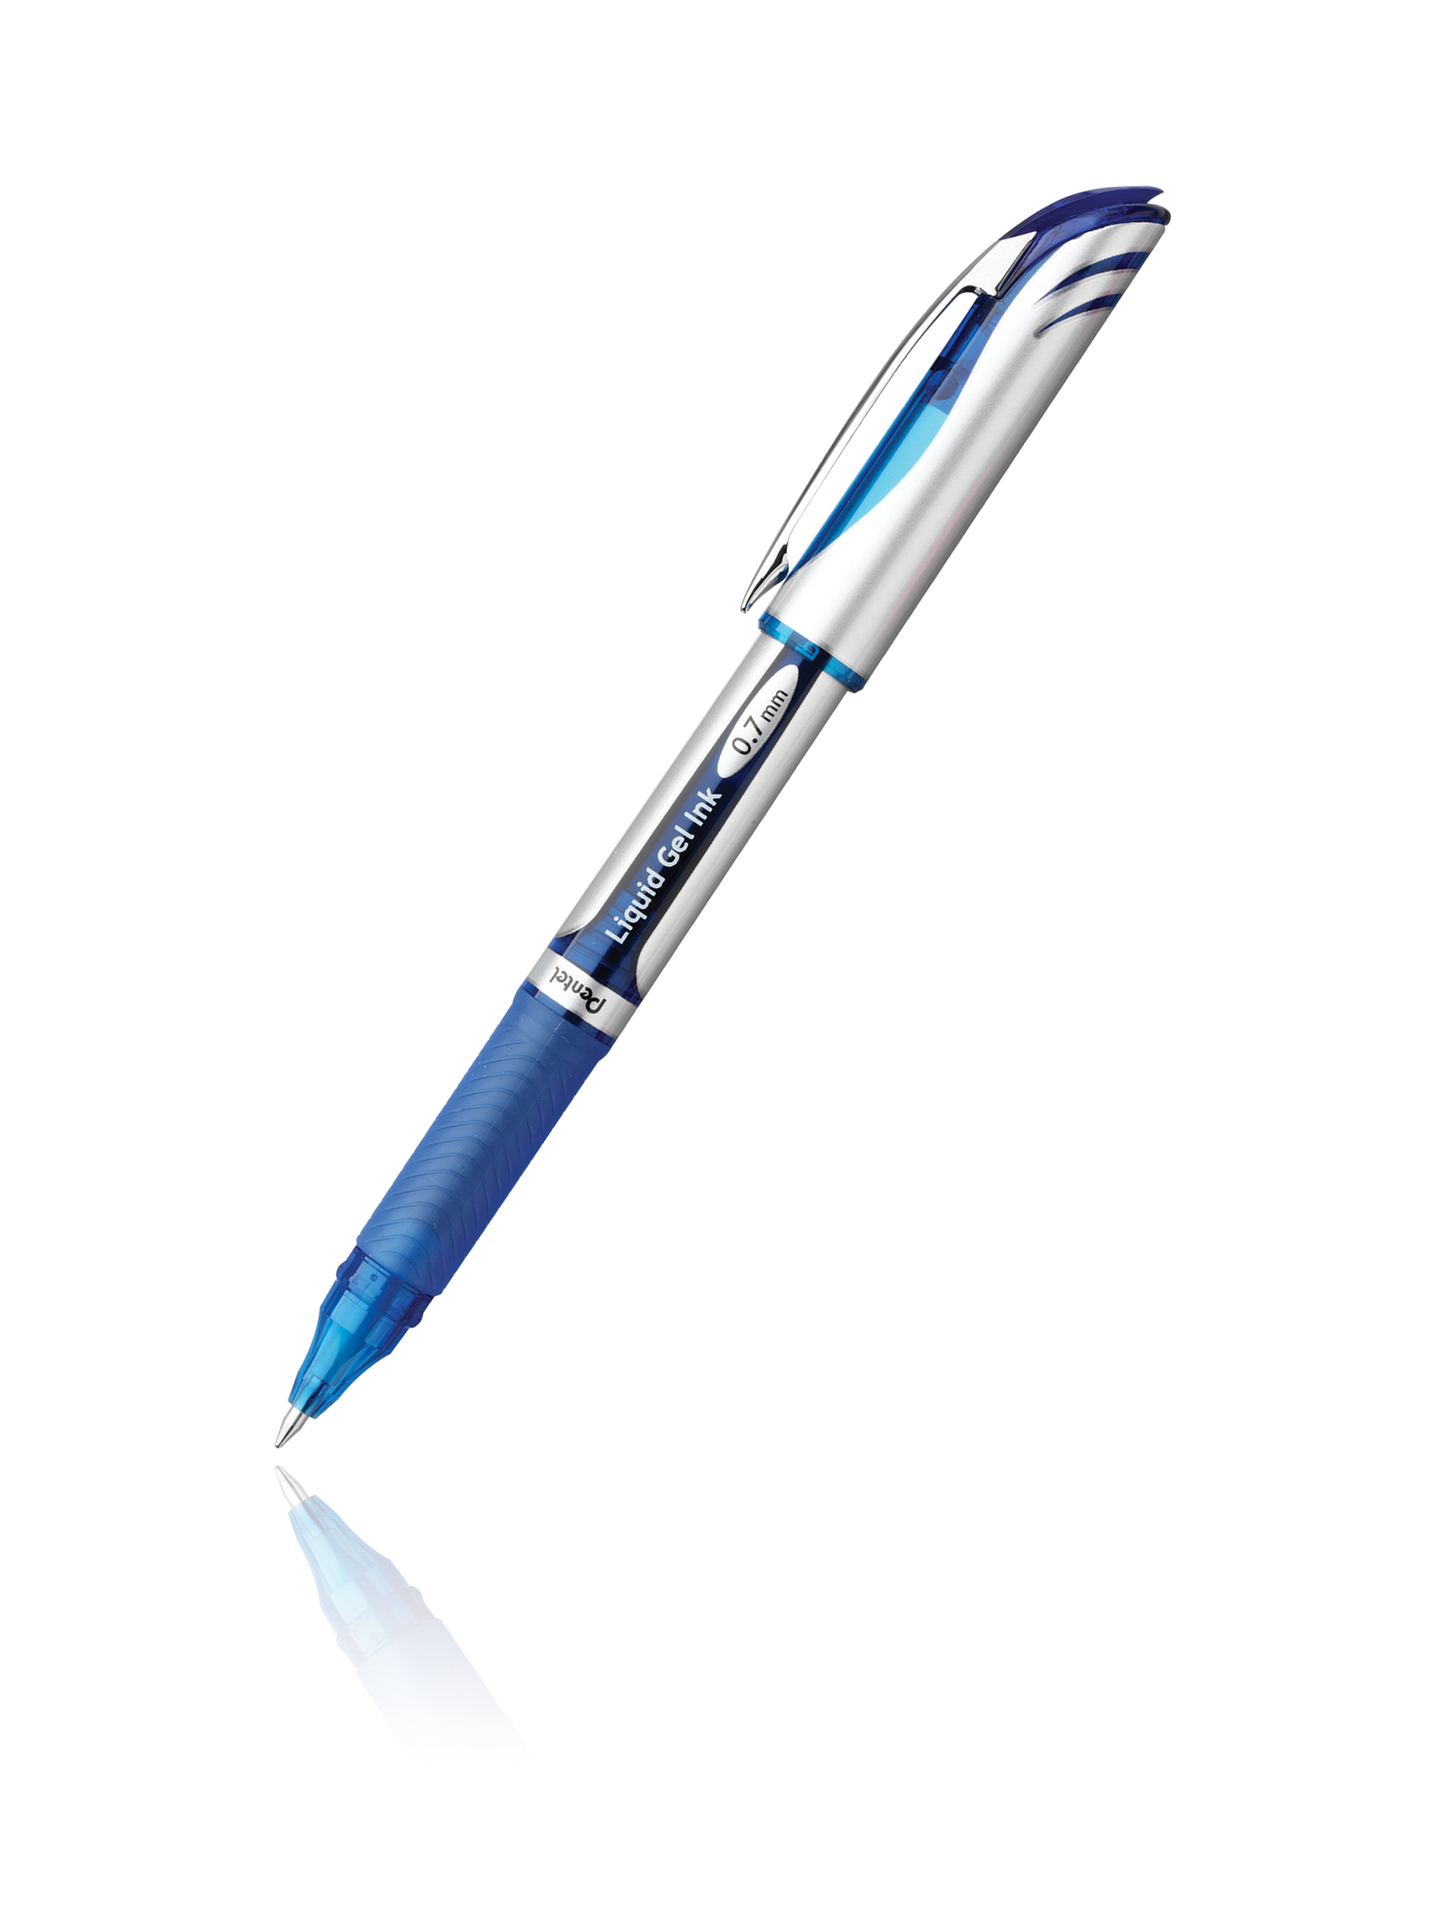 Pentel EnerGel NV Liquid Gel Pen, (0.7mm) Medium Line Capped, Metal Tip,  Black Ink